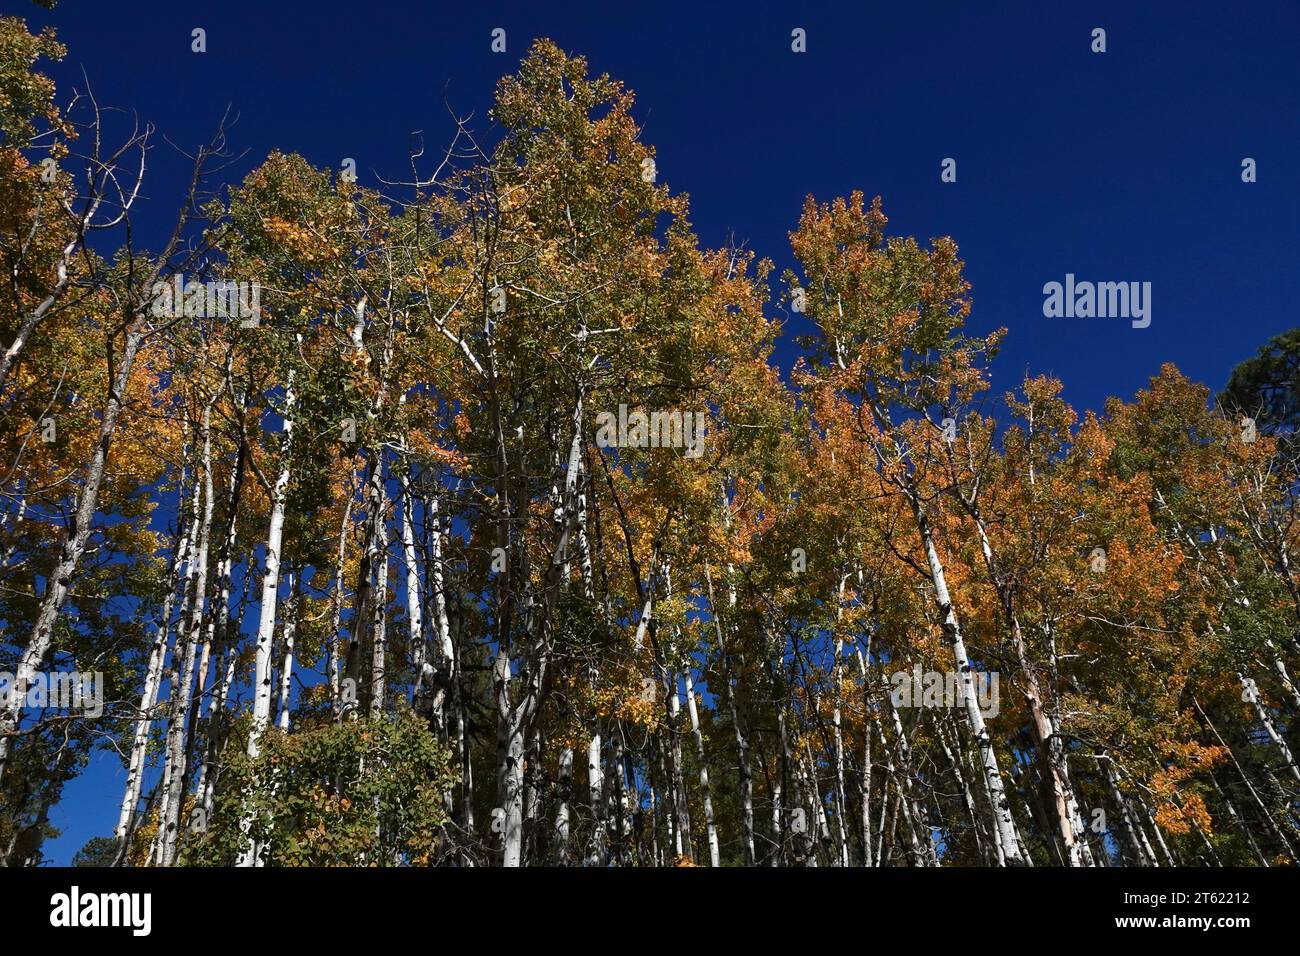 Un grupo de pinos ponderosa se vuelven amarillos durante el otoño a medida que cambian las estaciones Foto de stock